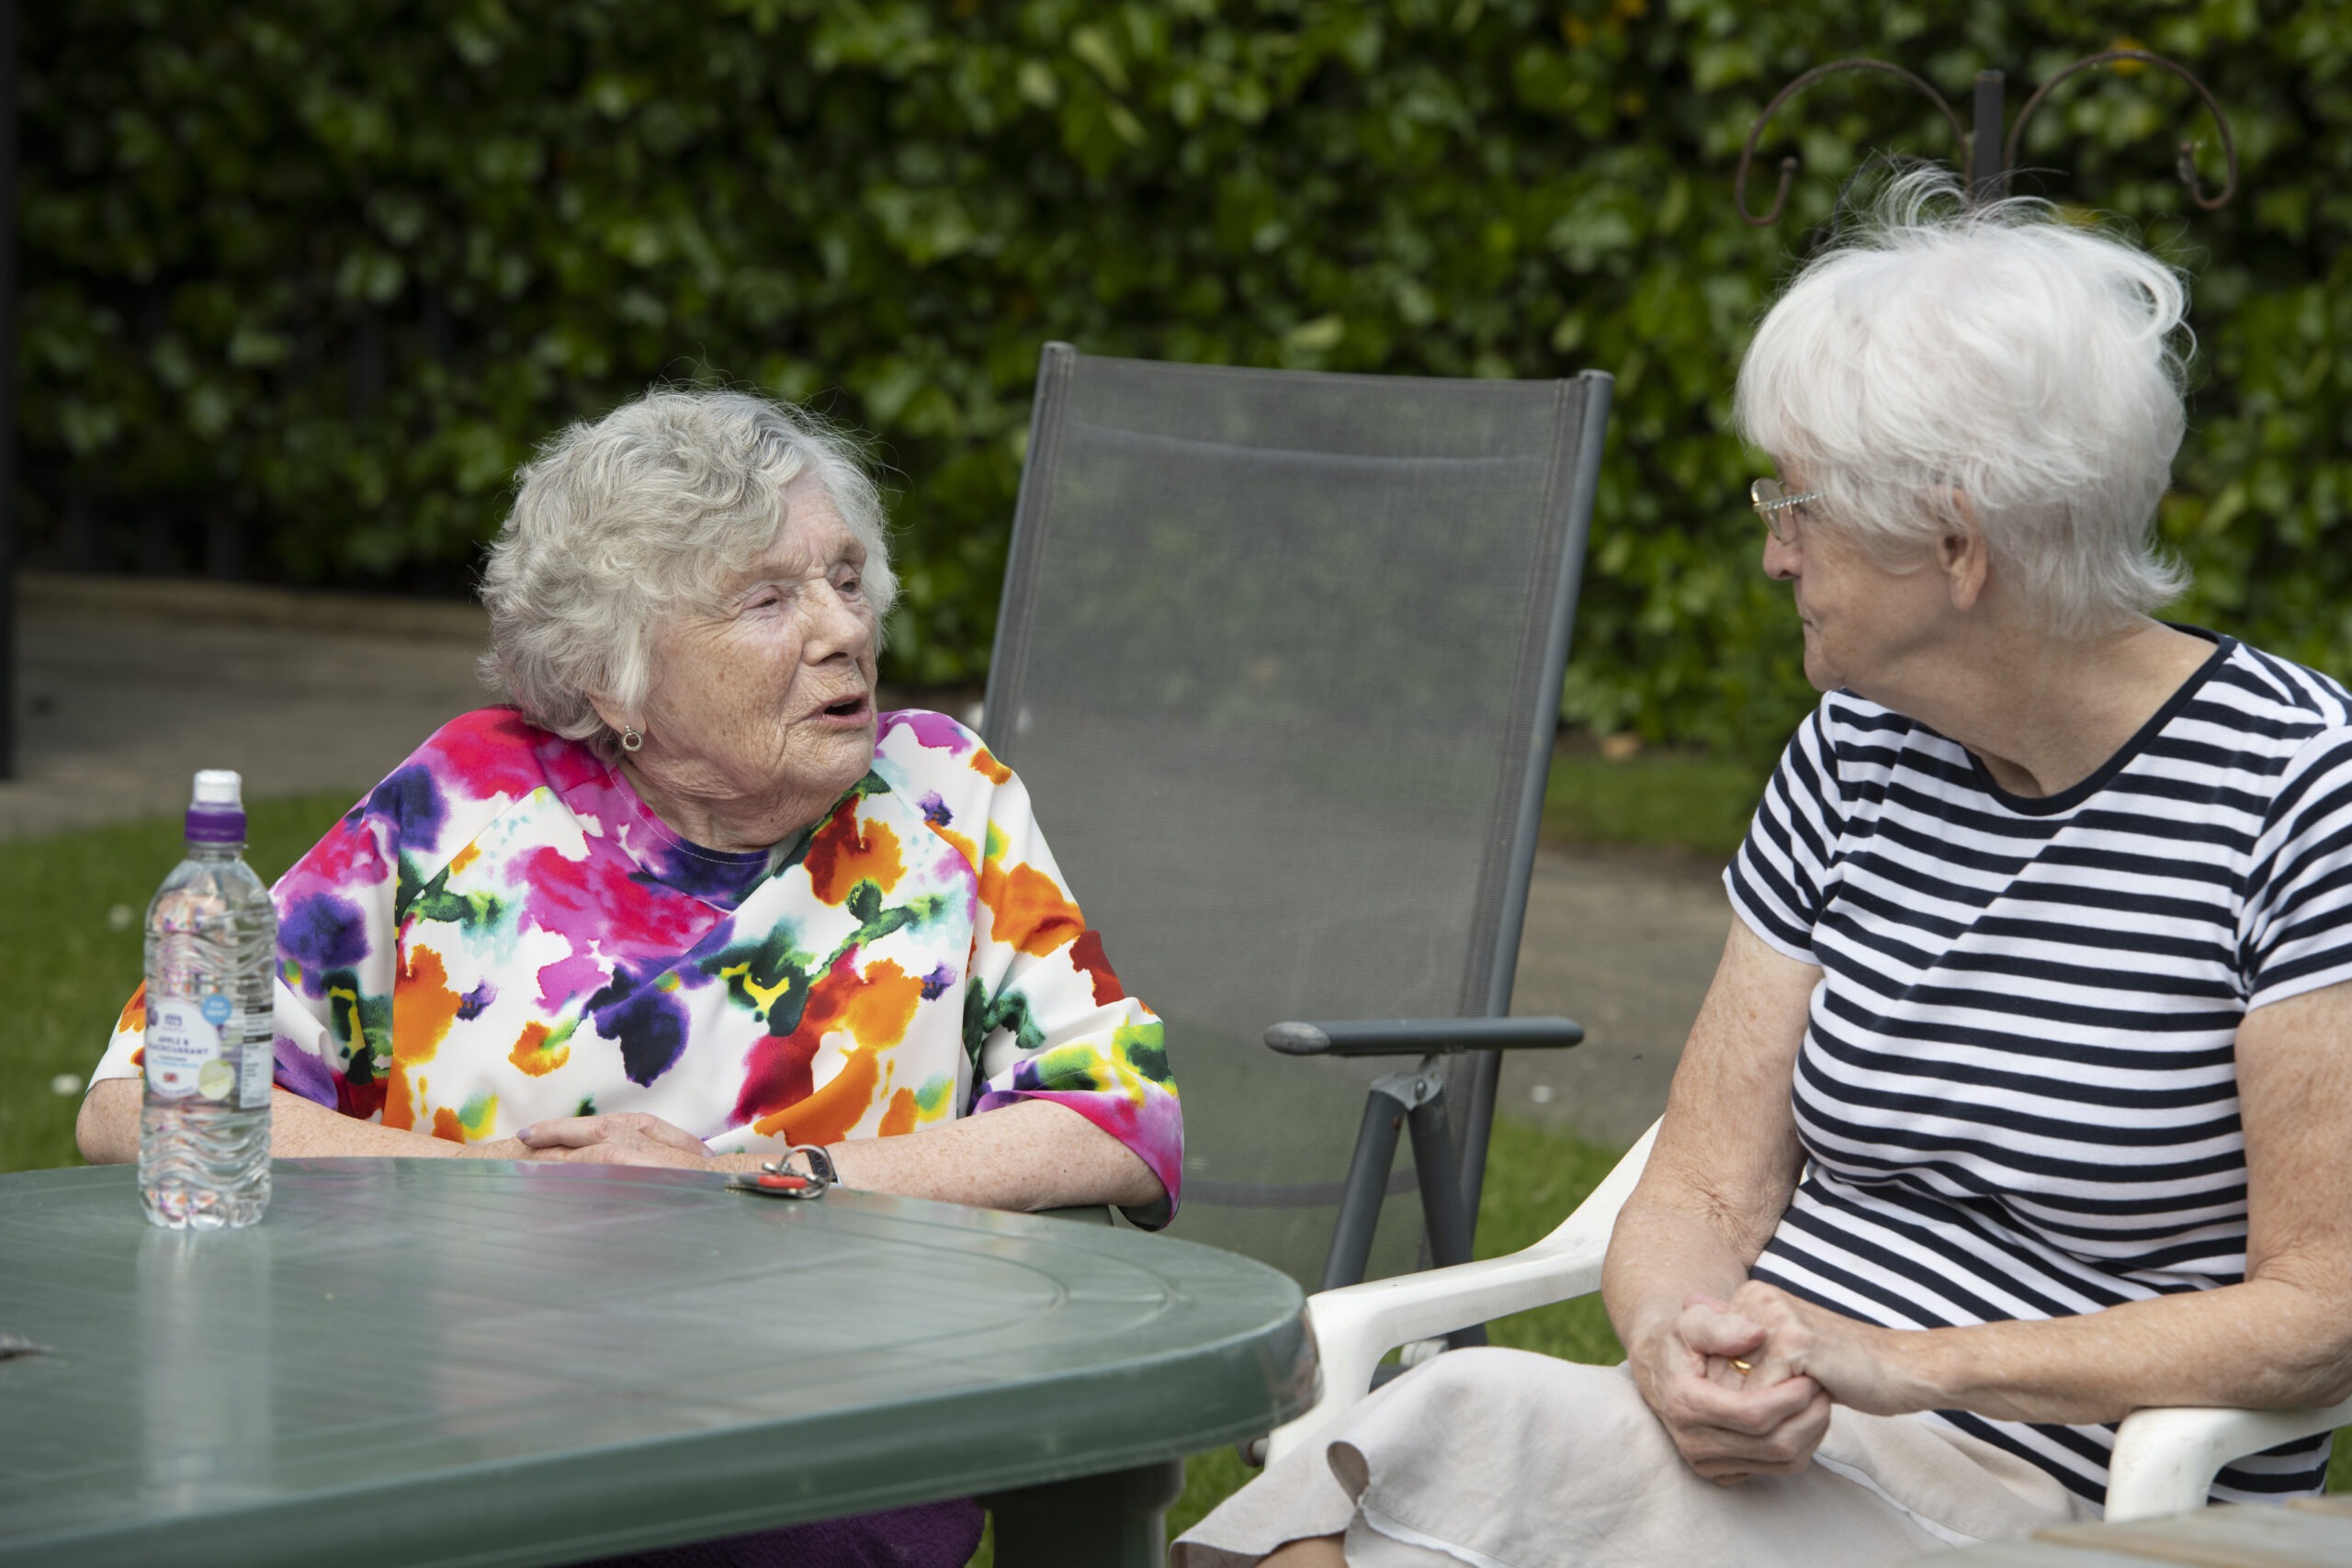 Two elderly women sat on garden chairs talking